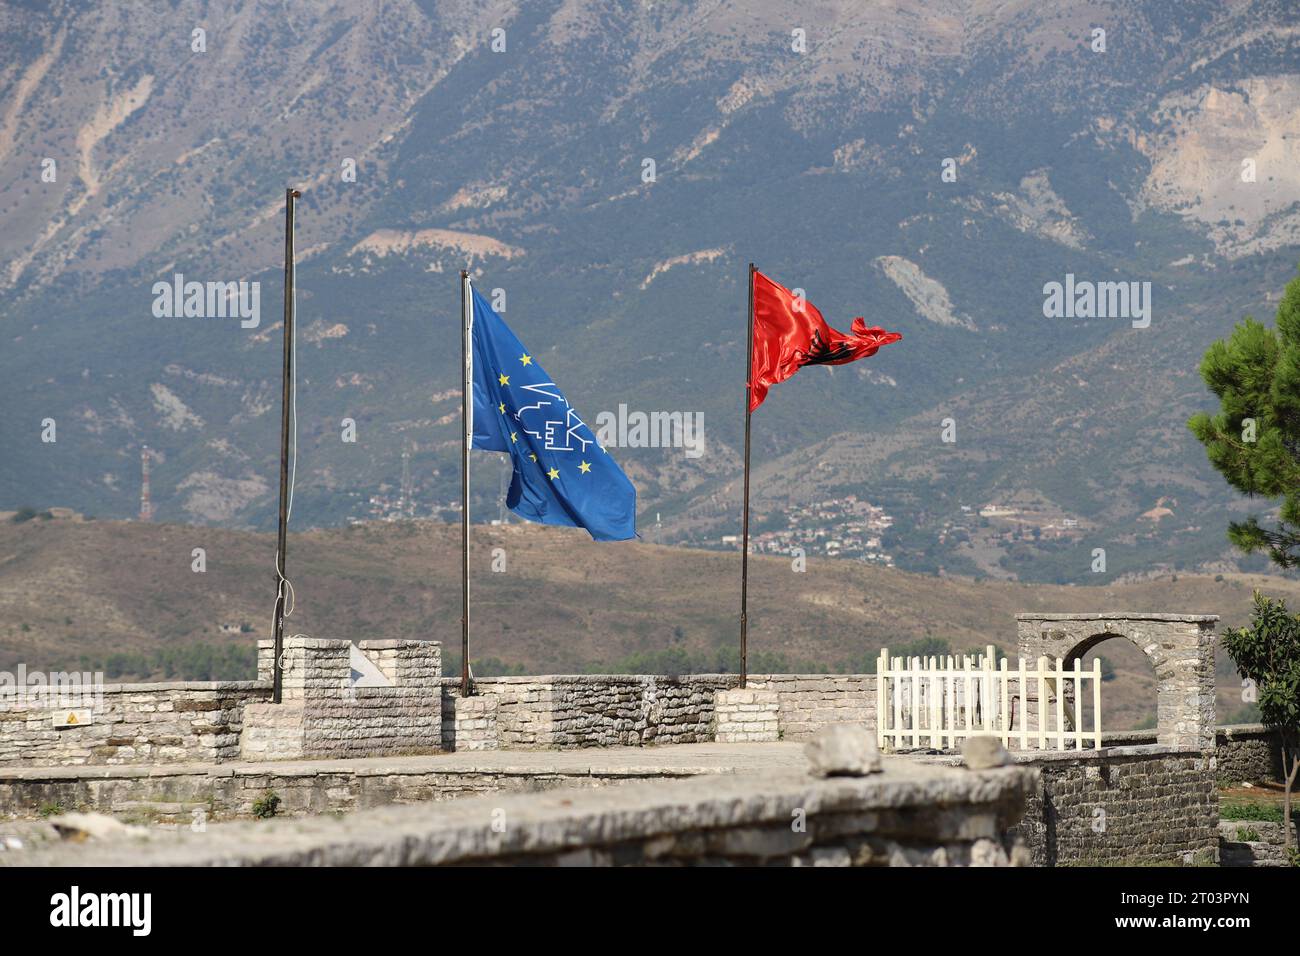 Eine blaue Flagge mit gelben Sternen und einem albanischen schwarzen Doppeladler auf rotem Hintergrund Besa, Fluss in der Brise mit Bergkulisse am Gjirokaster Castle Stockfoto